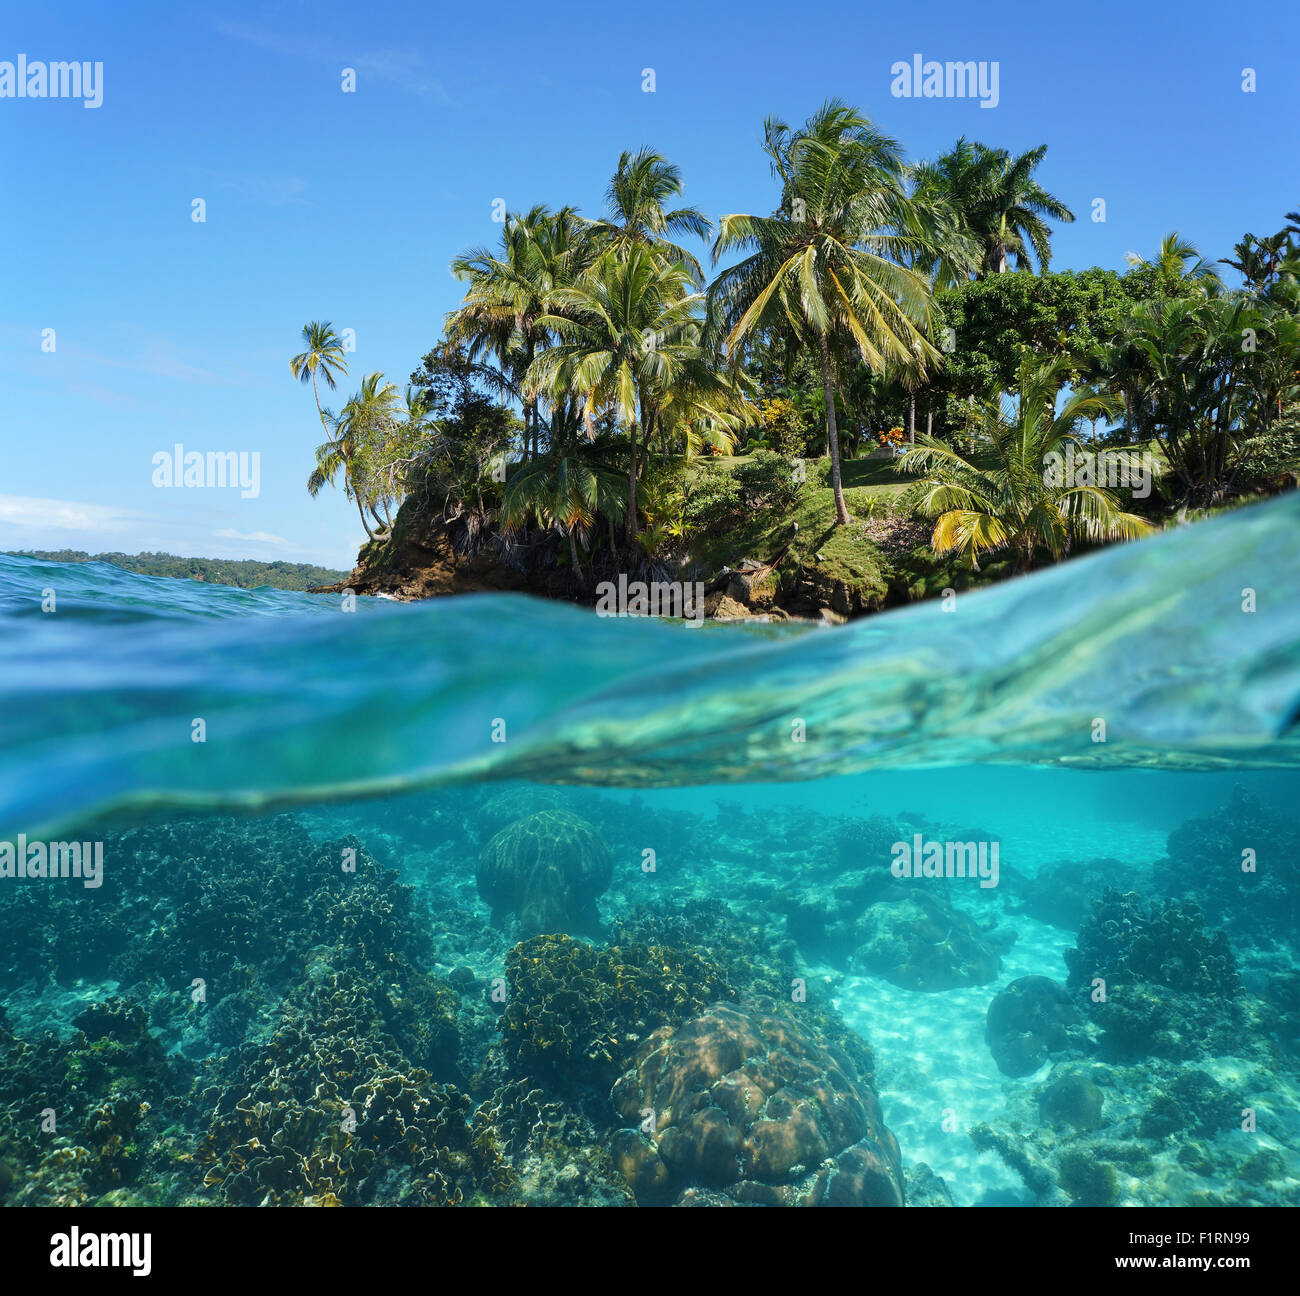 L'île tropicale et les coraux sous l'eau divisée par flottaison, mer des Caraïbes Banque D'Images